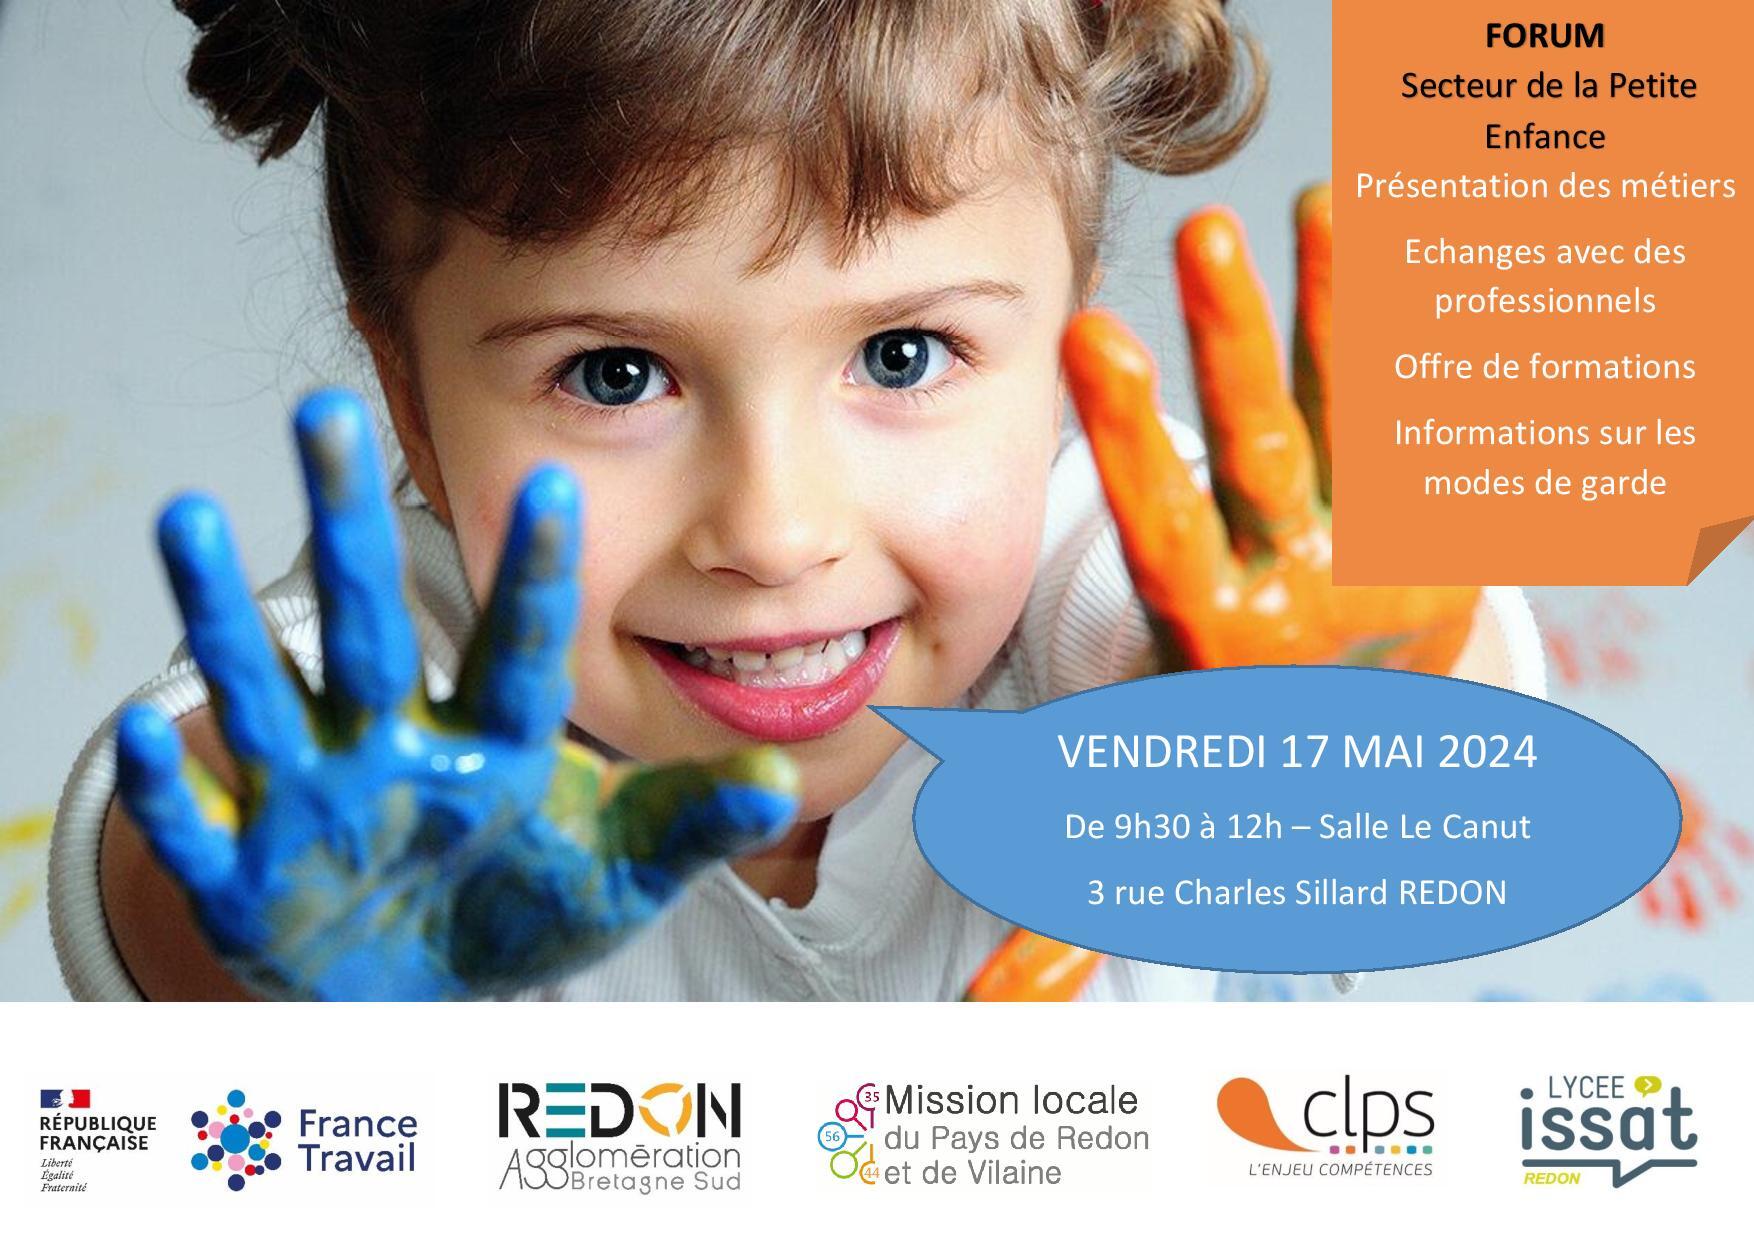 forum de promotion des métiers de la petite enfance du 17 mai